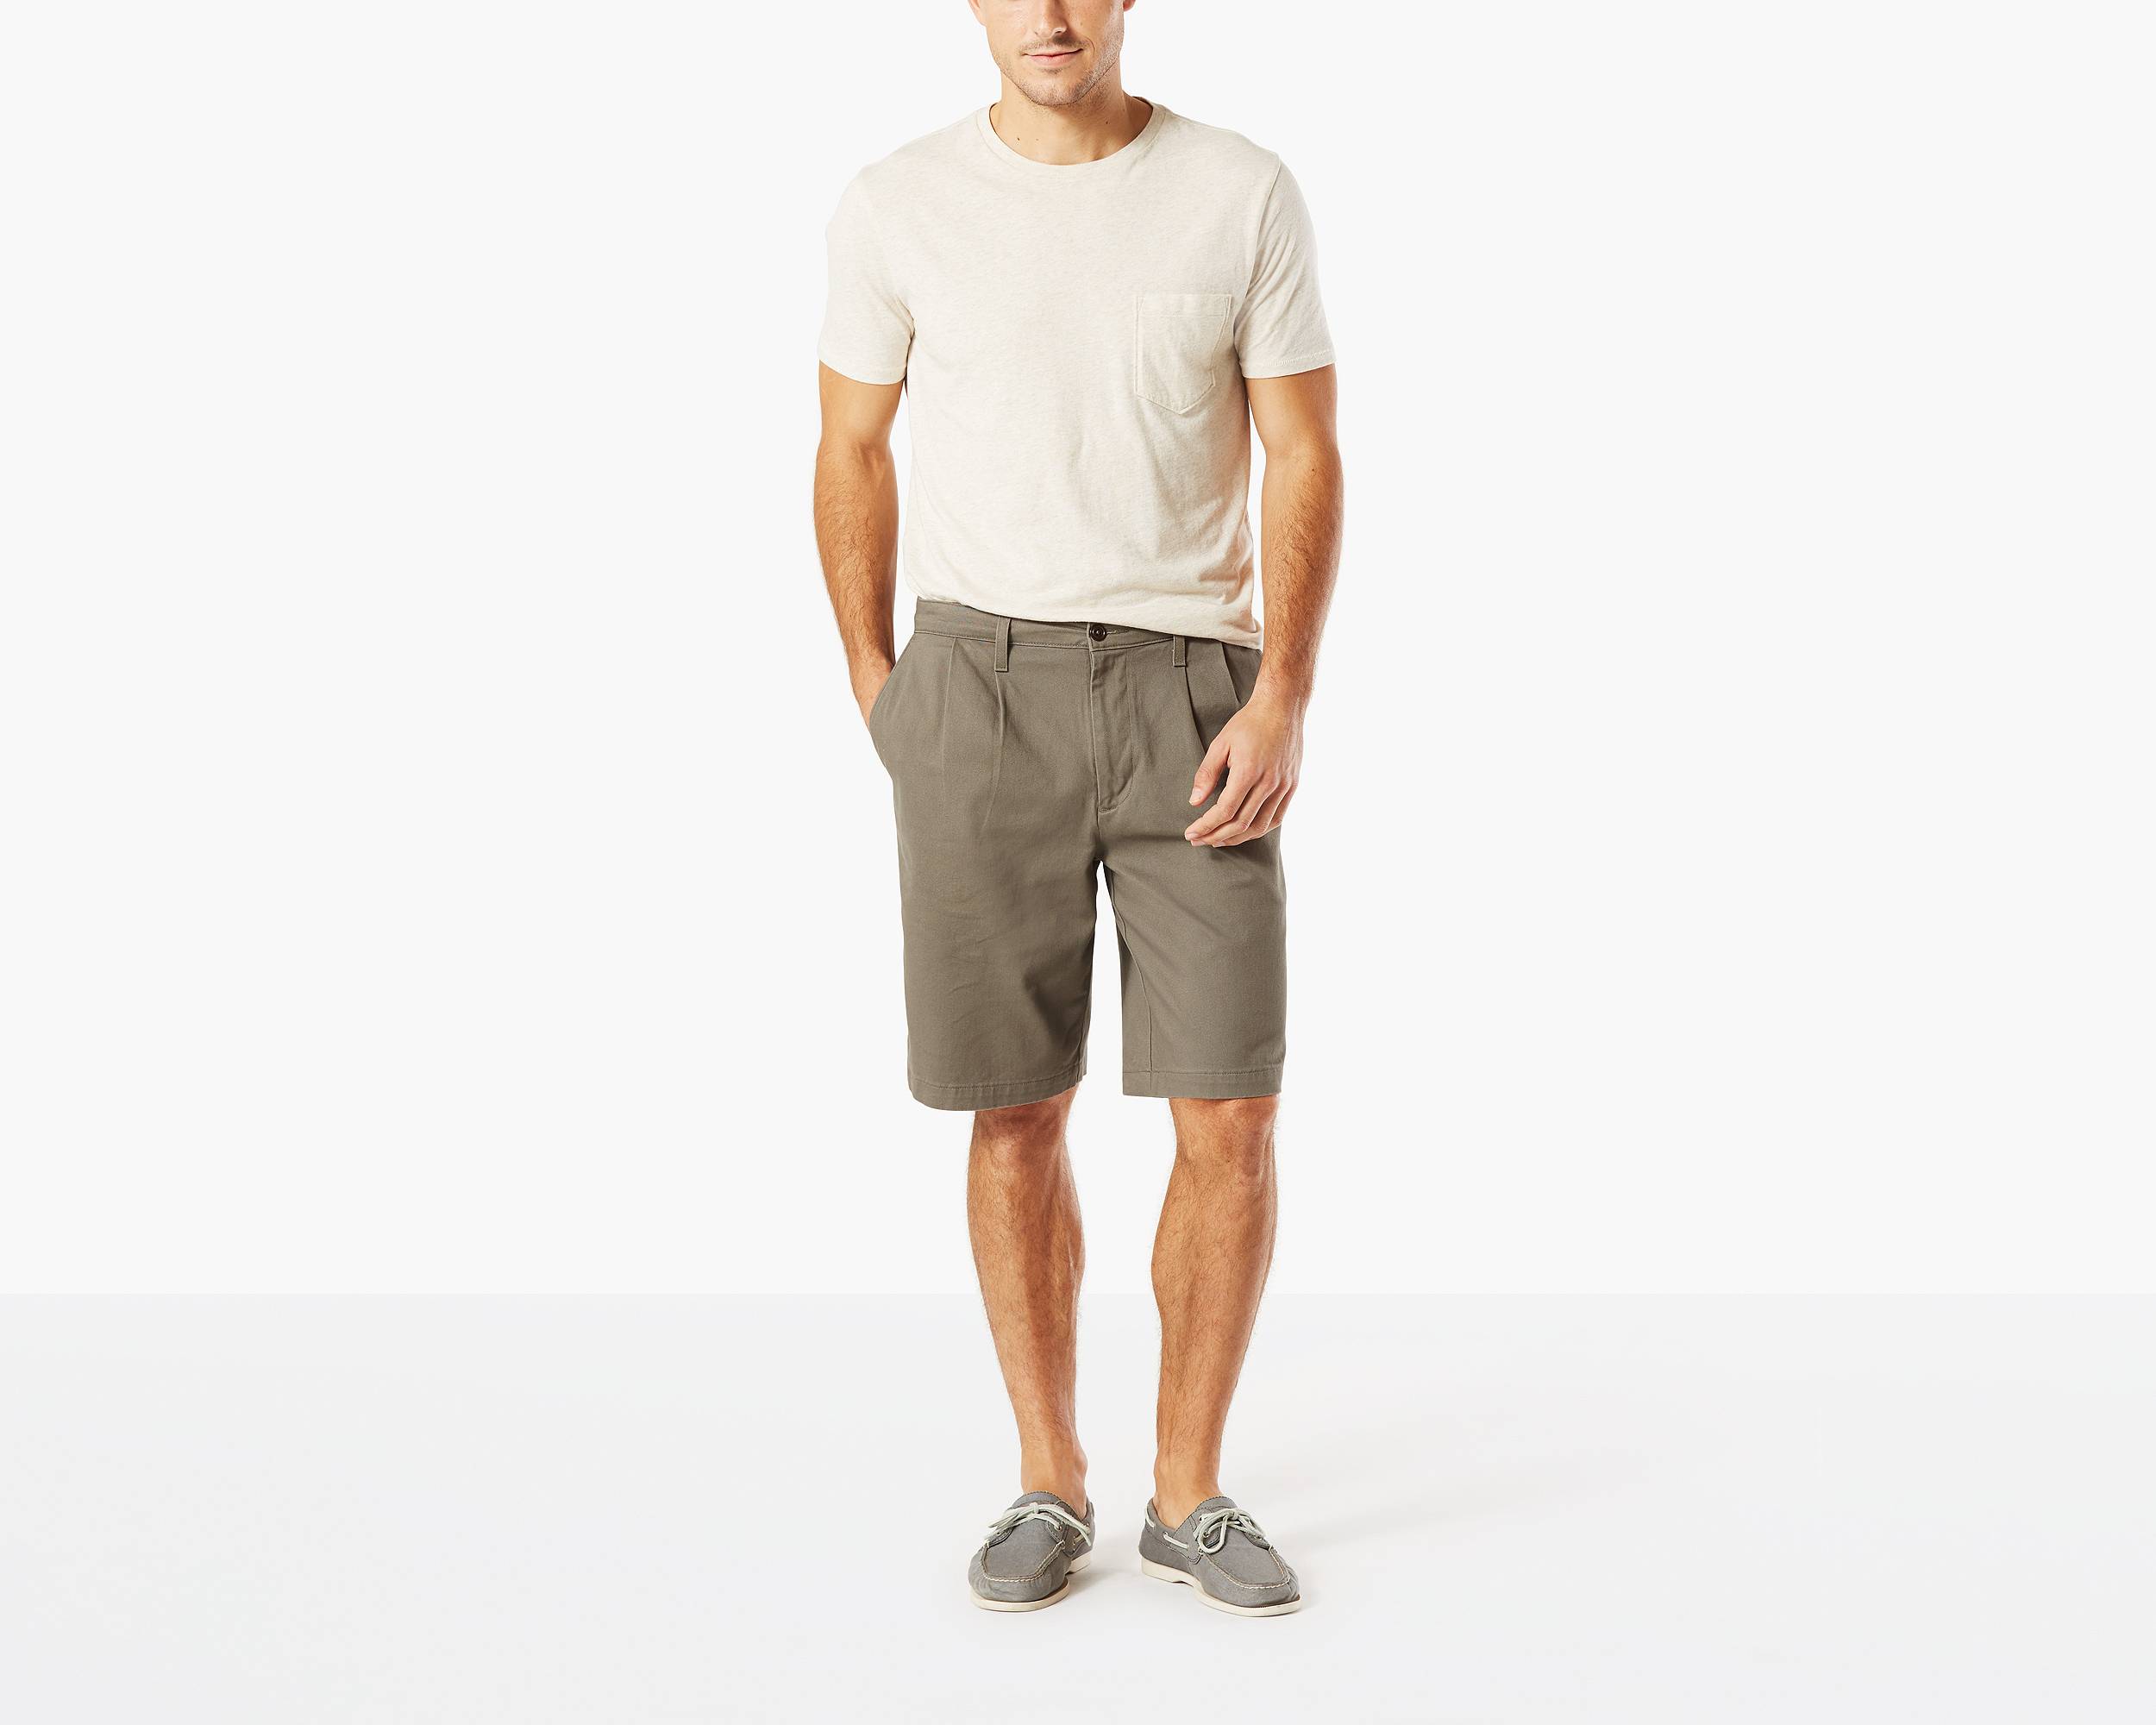 Men's Shorts On Sale - Shop Sale Shorts for Men | Dockers®